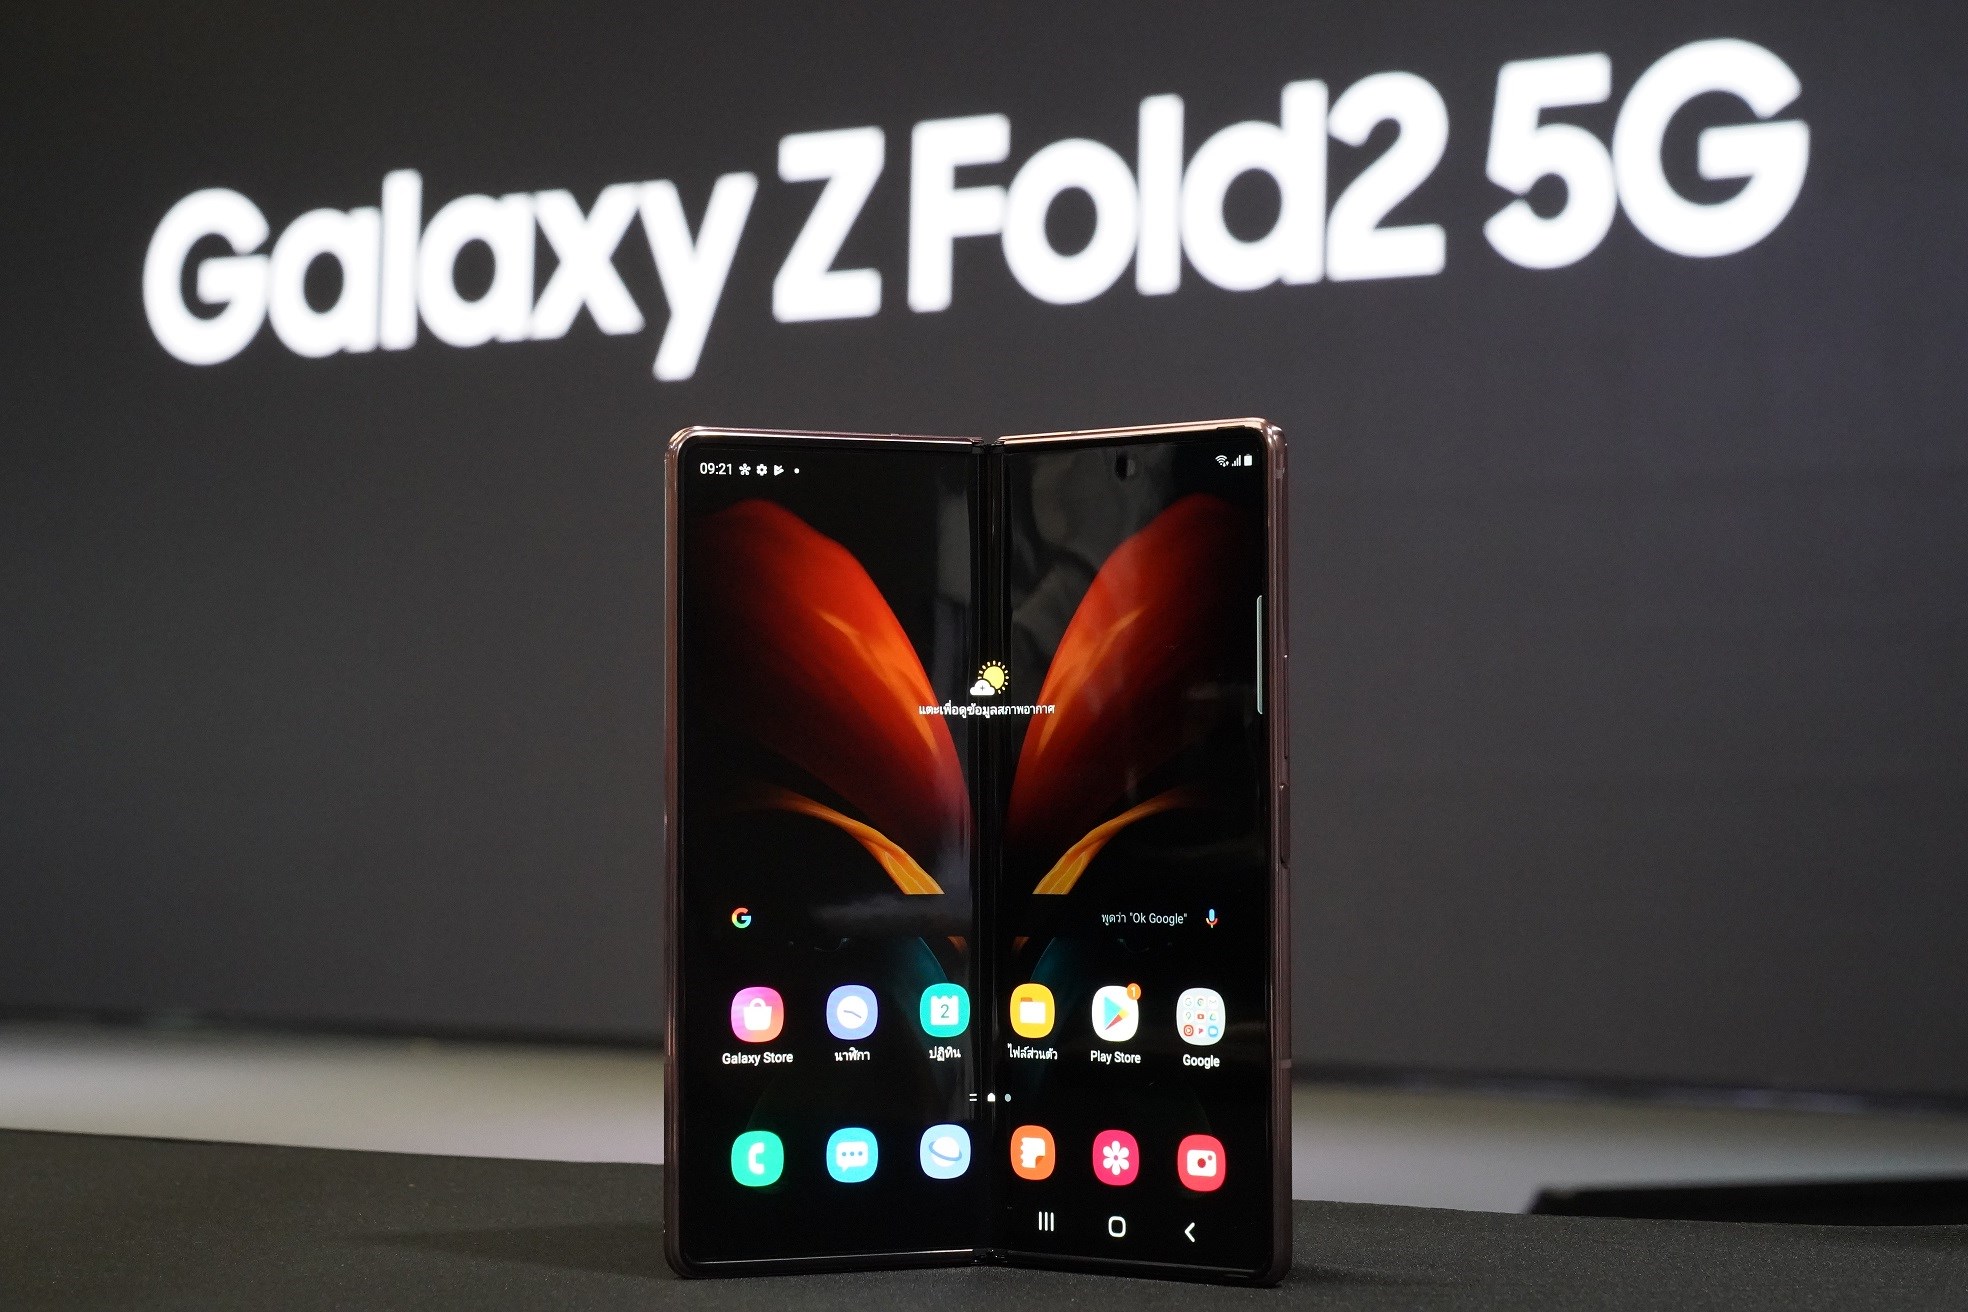 เปิดจองกลุ่มแรกของโลก 'Galaxy Z Fold2 5G สุดยอดนวัตกรรมสมาร์ทโฟนแห่งยุค